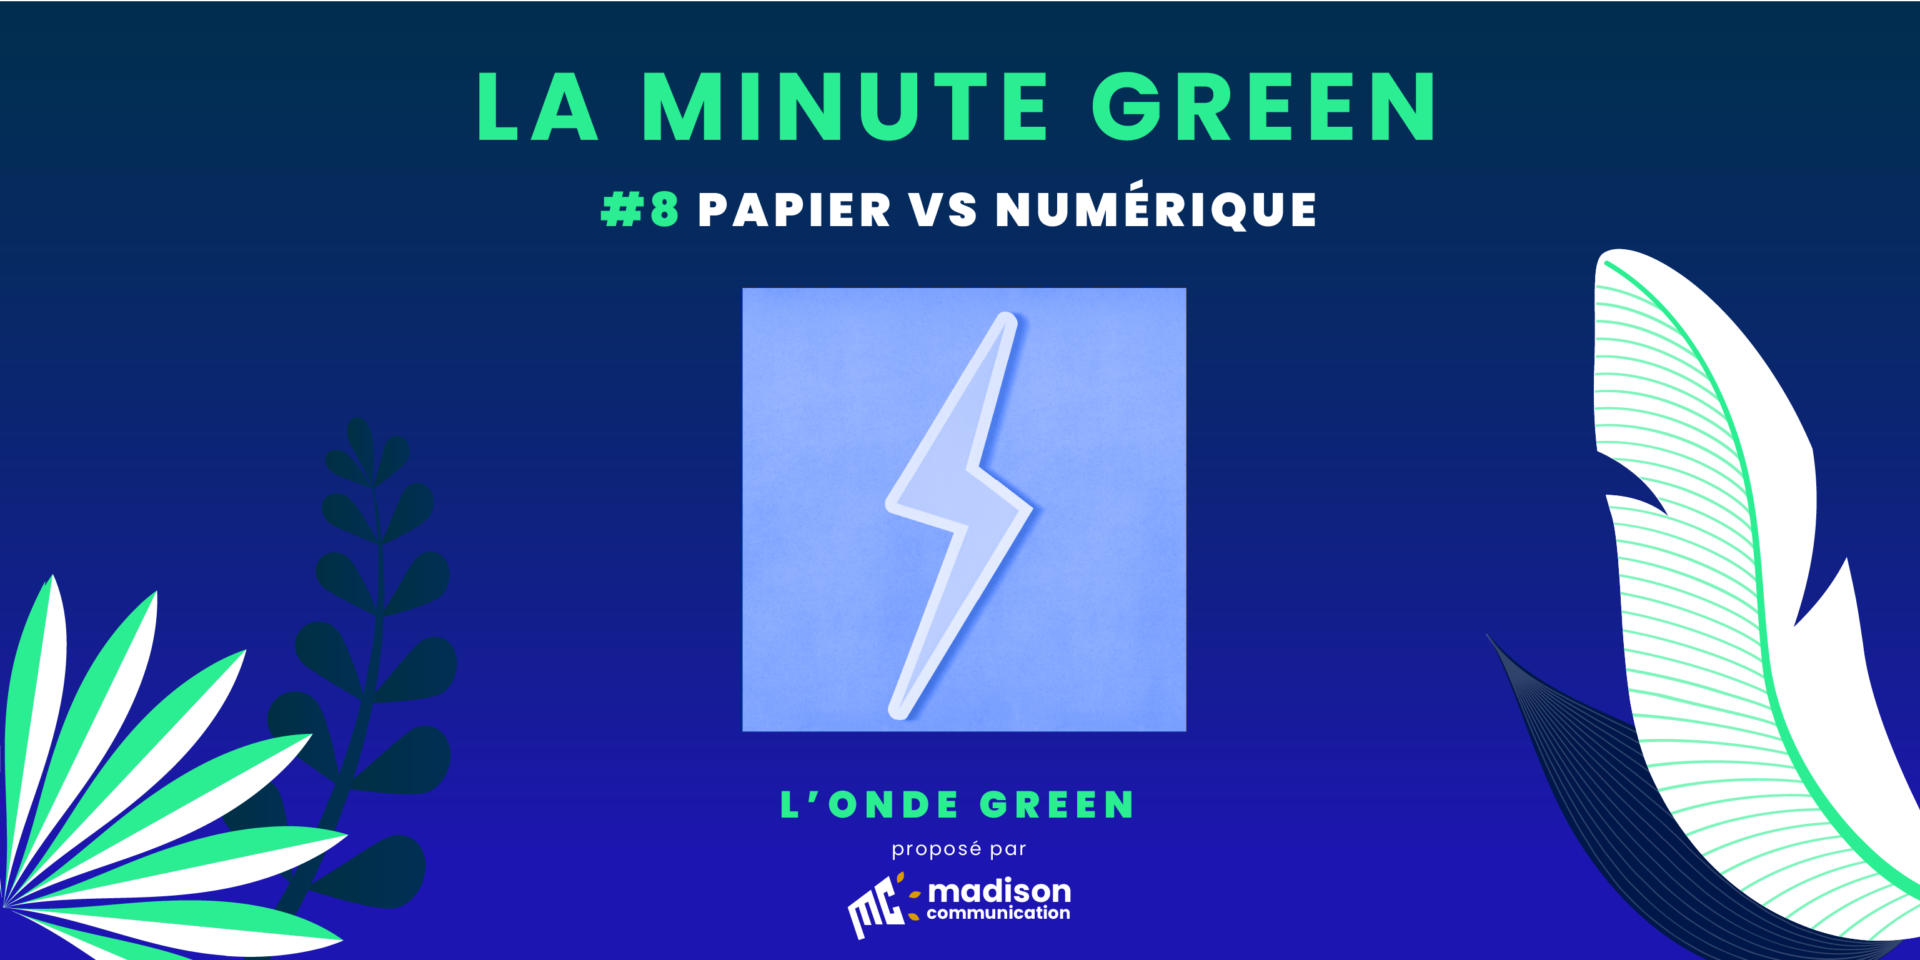 Podcast L’onde Green / Minute Green #8 – Papier VS Numérique : le match !